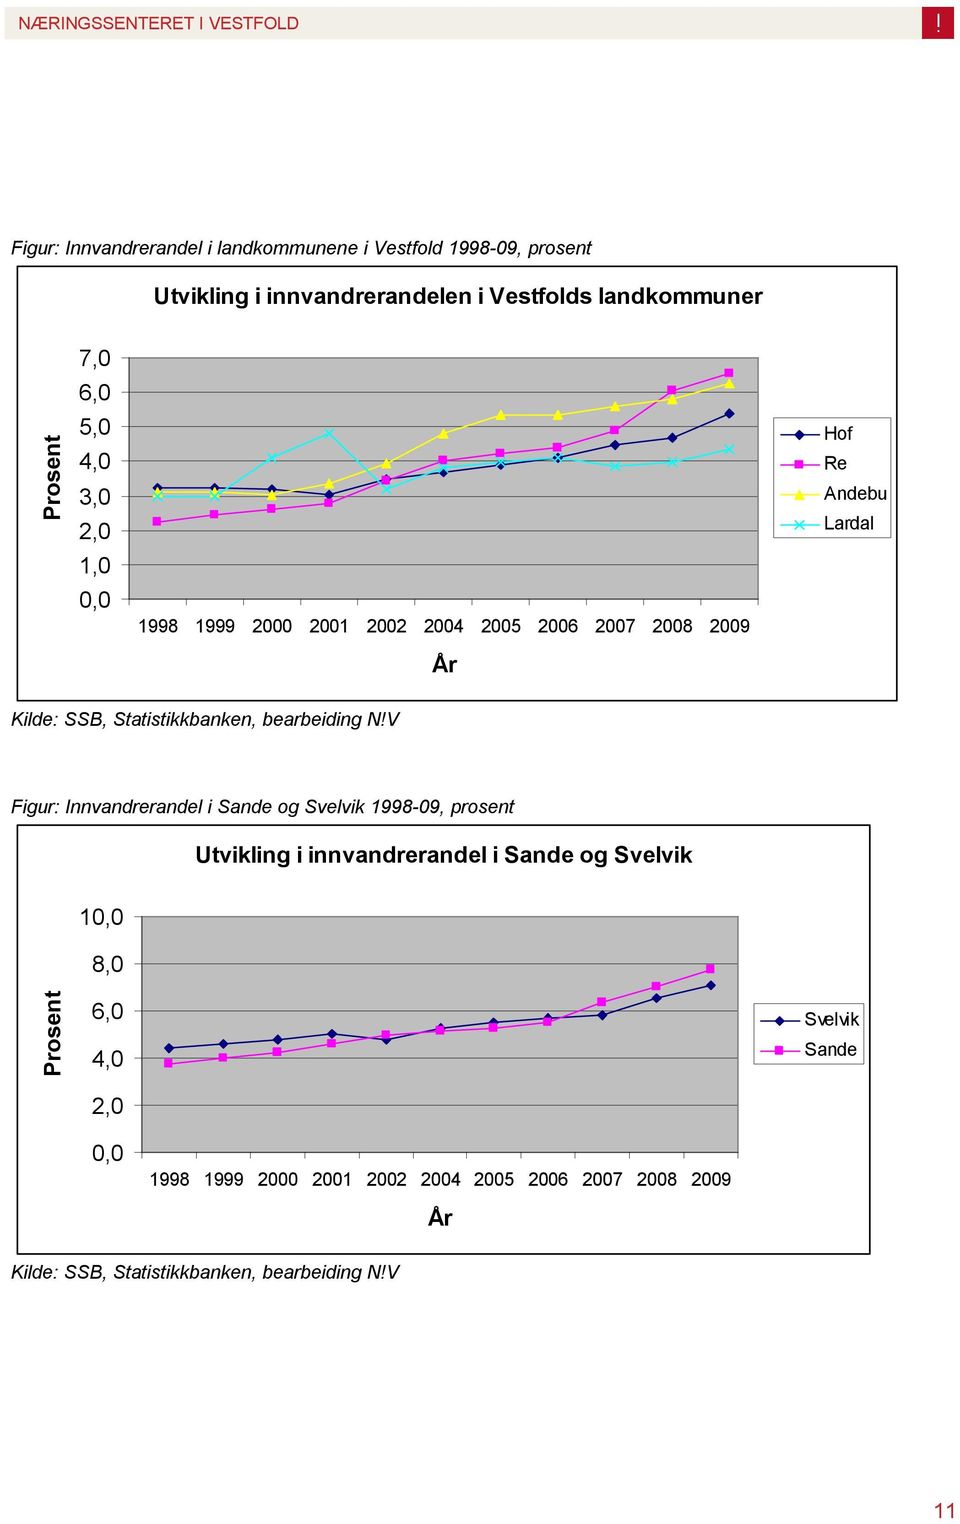 Hof Re Andebu Lardal Figur: Innvandrerandel i Sande og Svelvik 1998-09, prosent Utvikling i